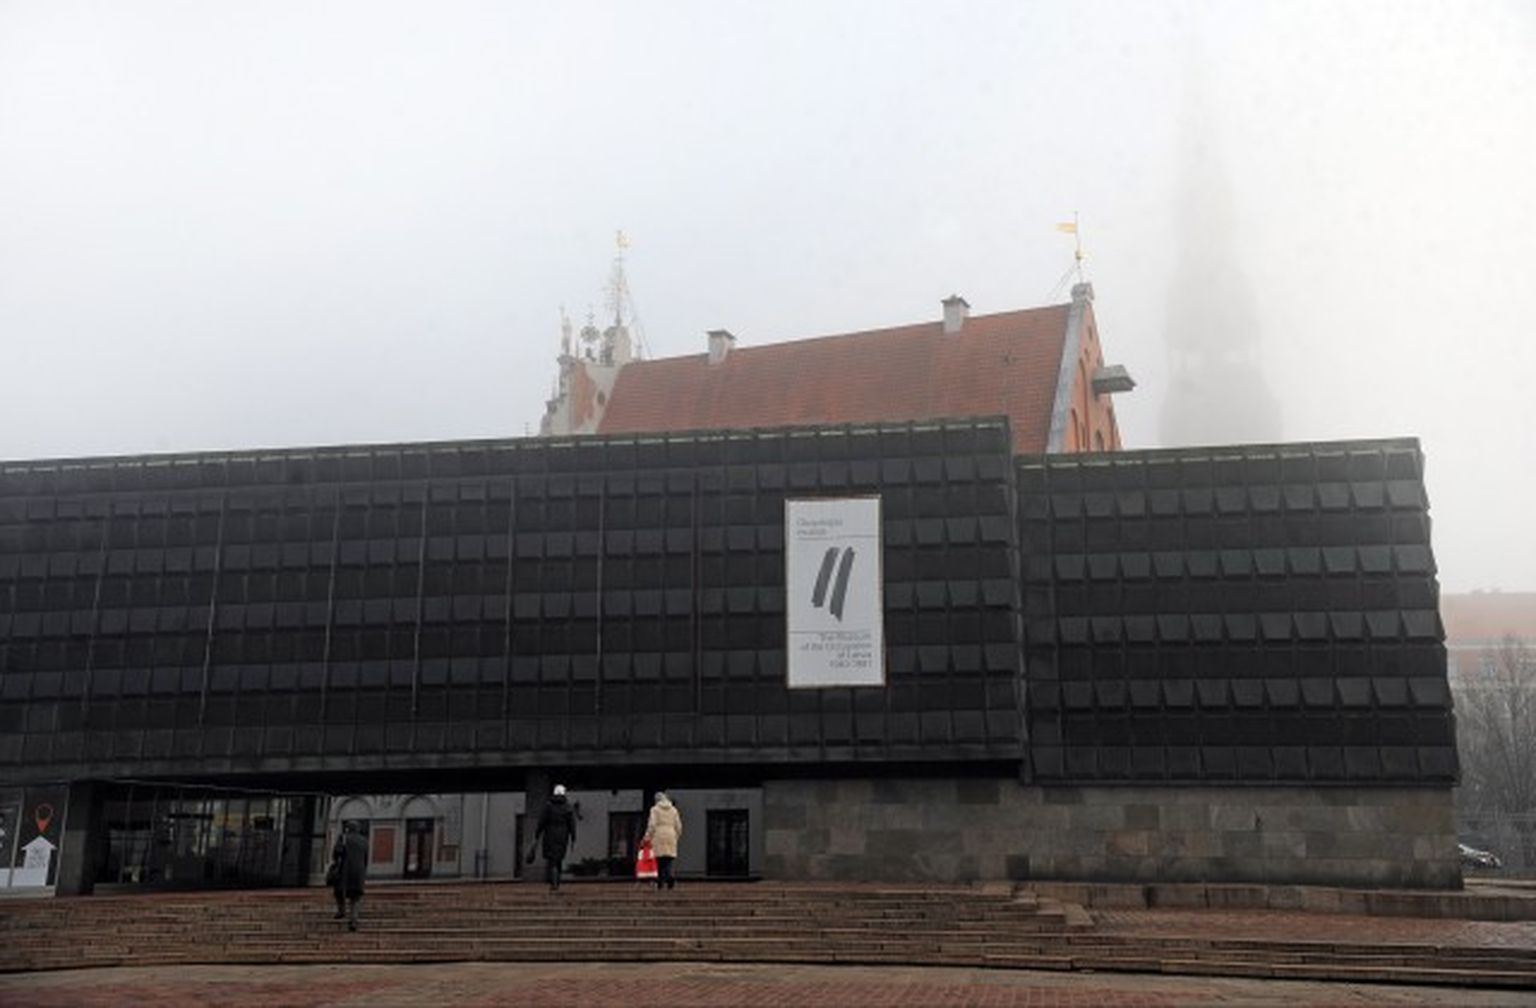 Latvijas Okupācijas muzejs